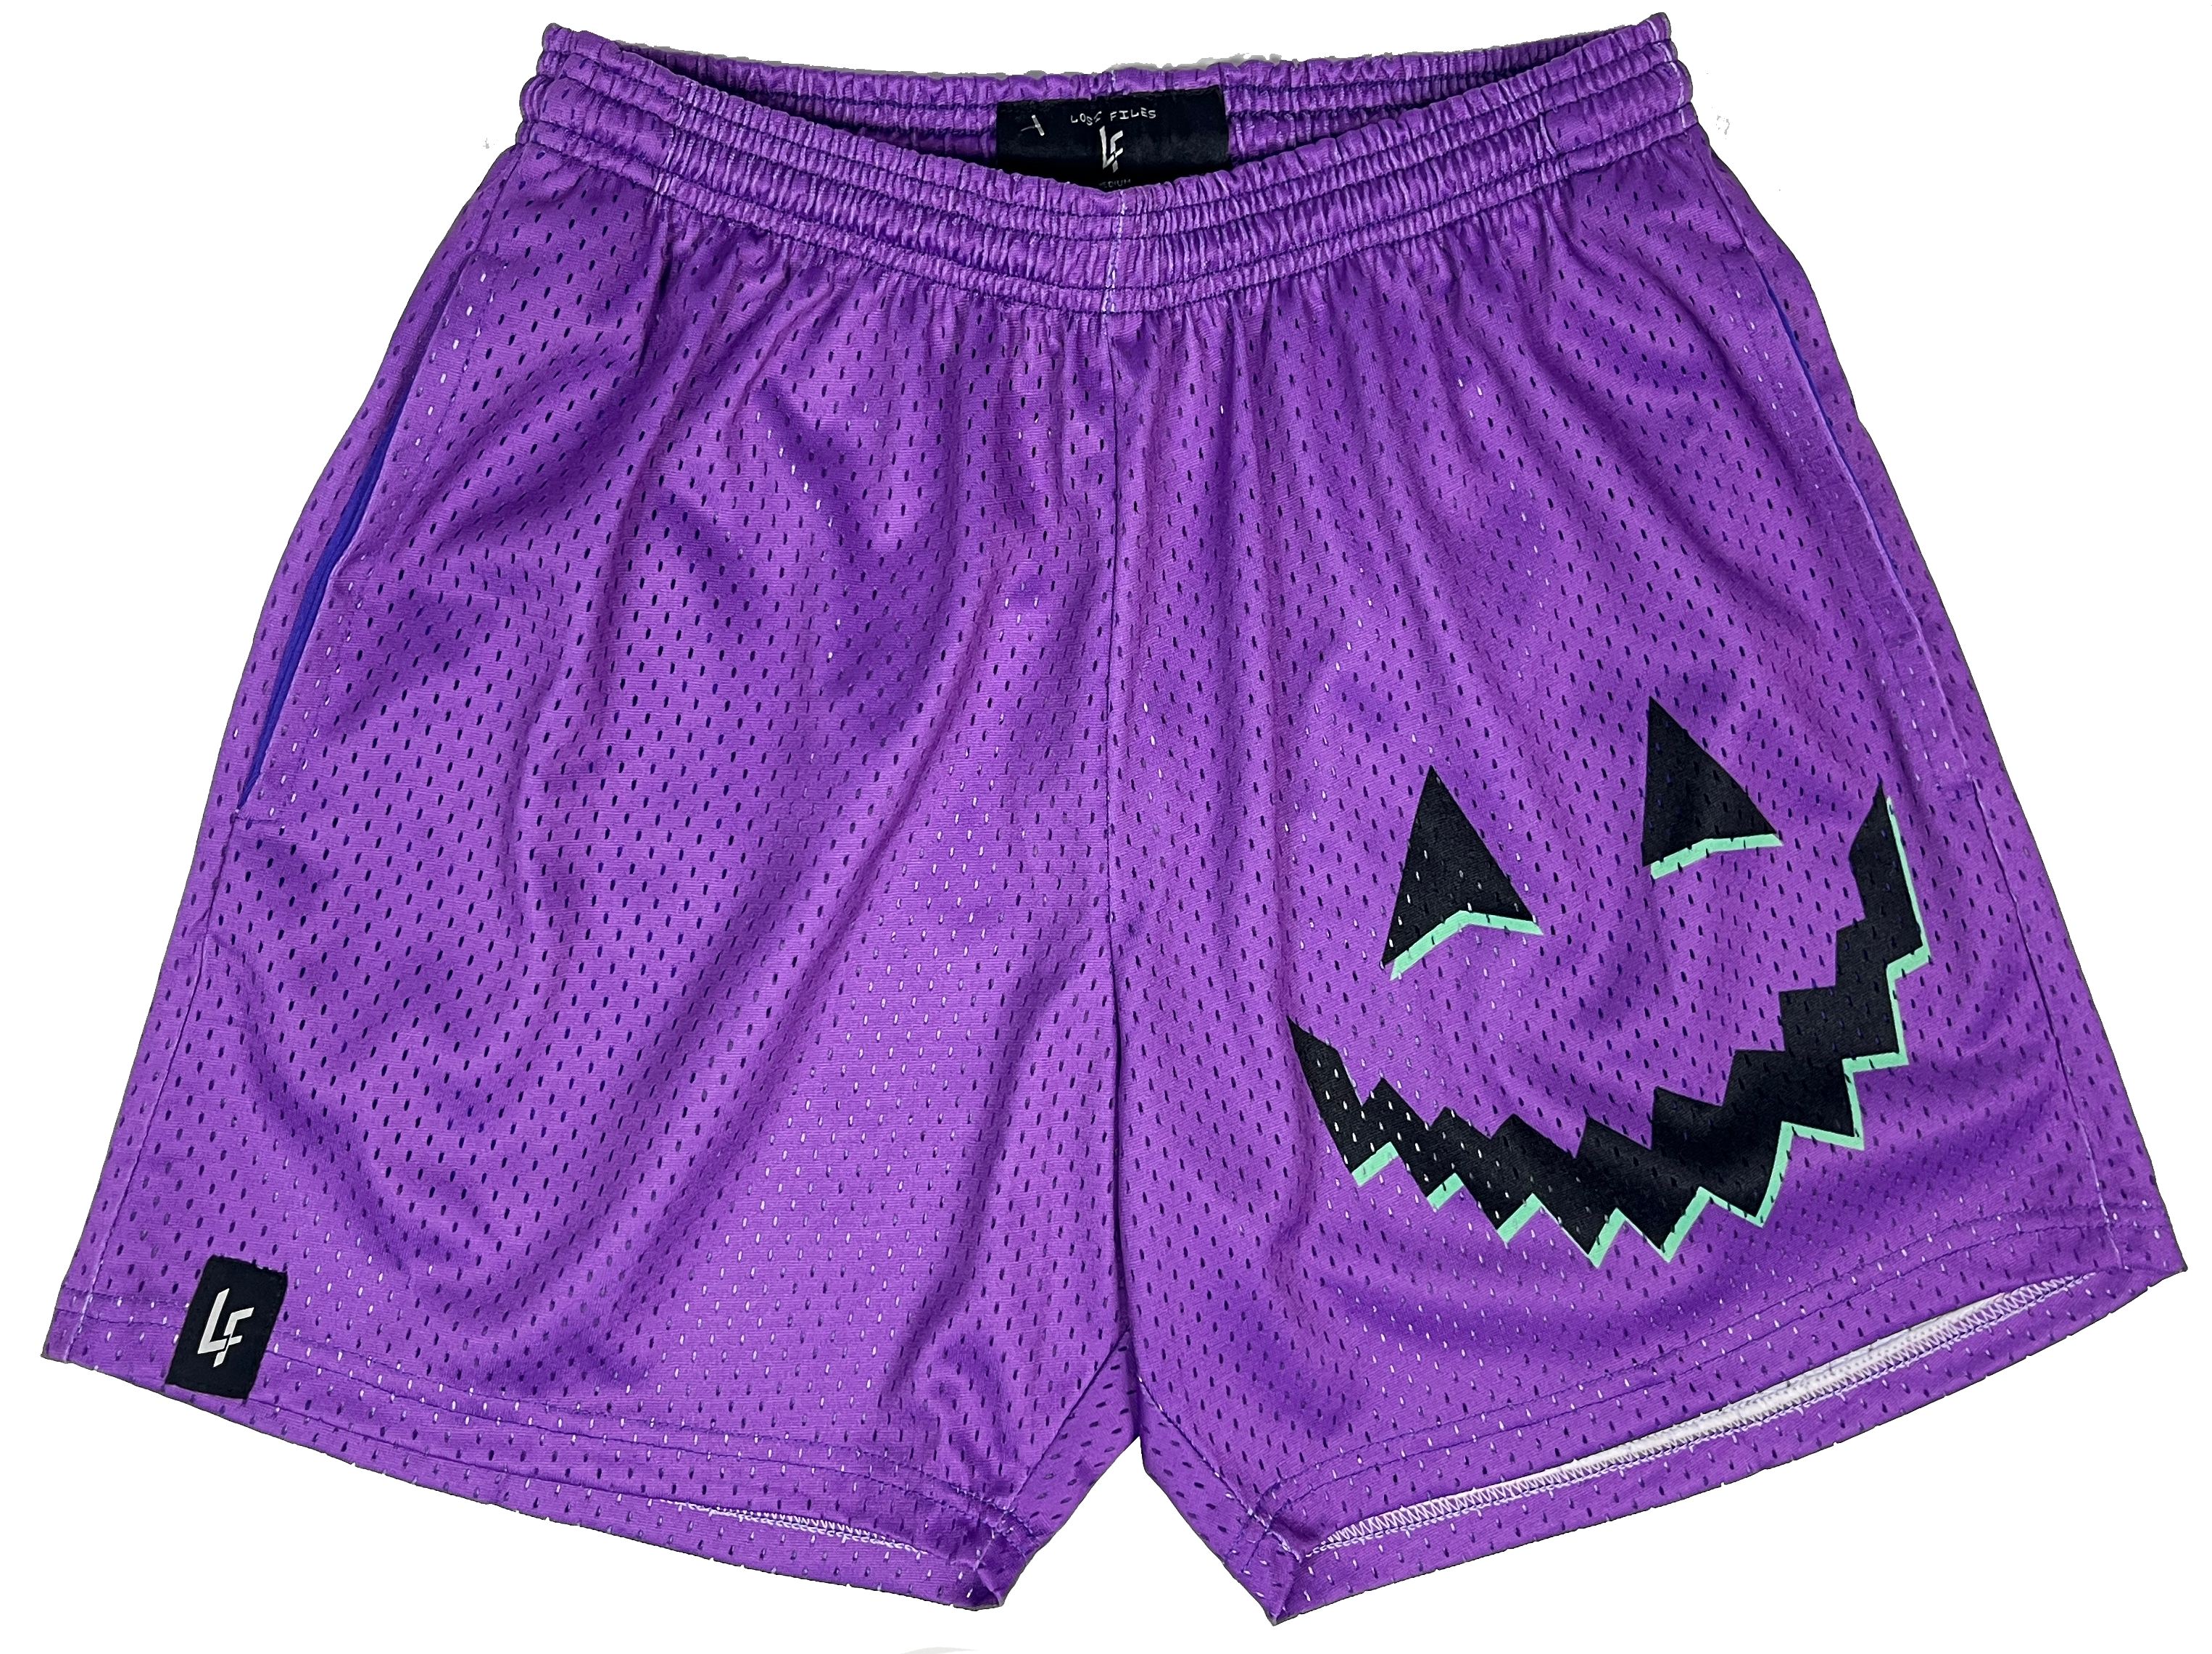 Purple Jack-o-Lantern Shorts